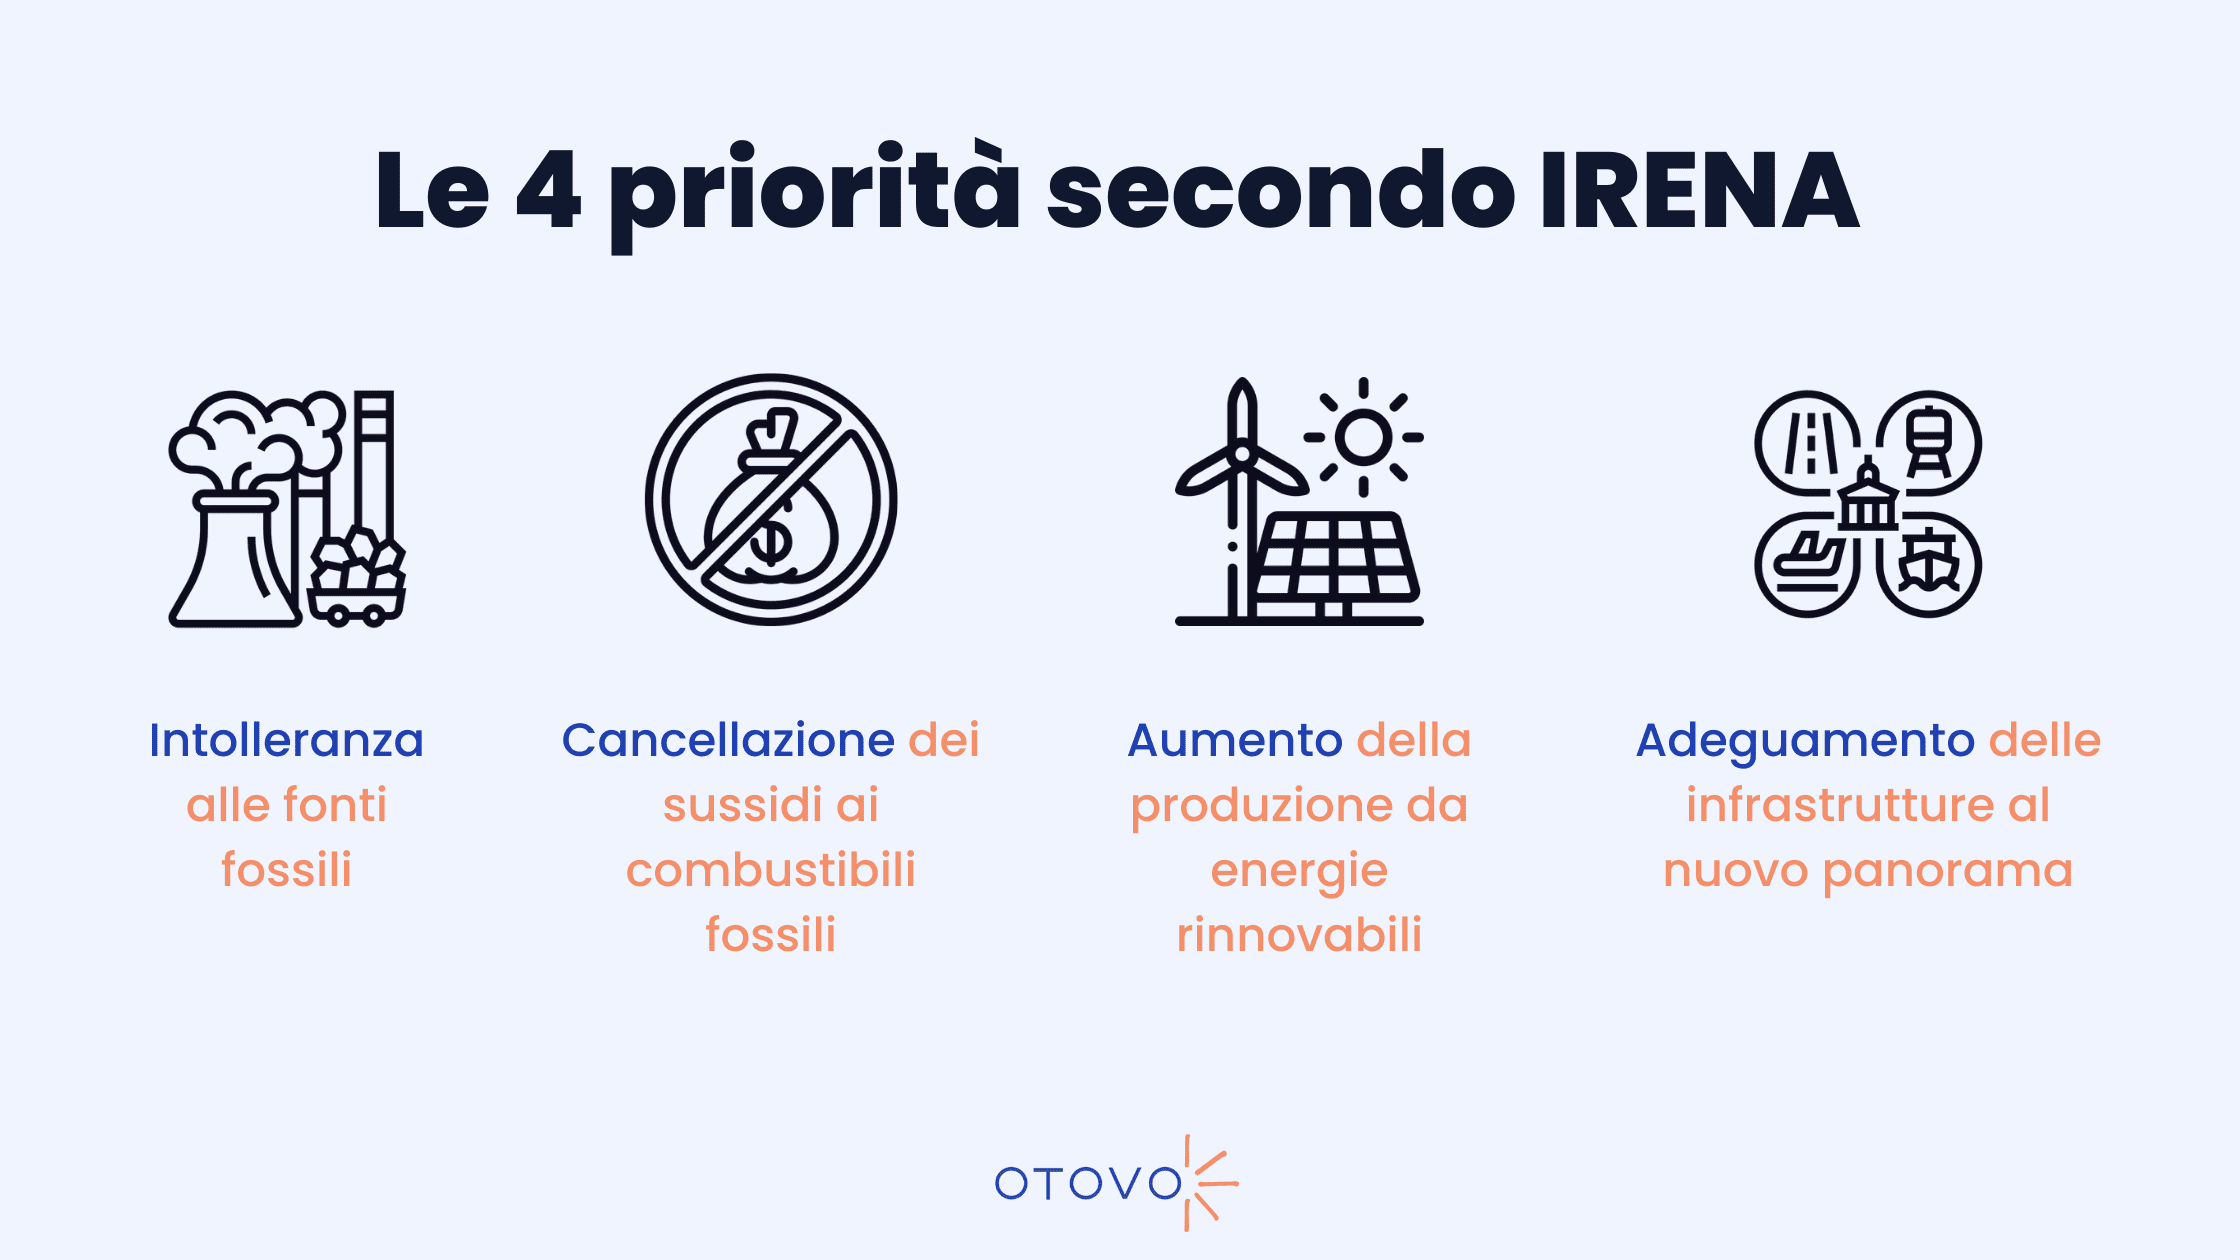 Le 4 priorità secondo IRENA